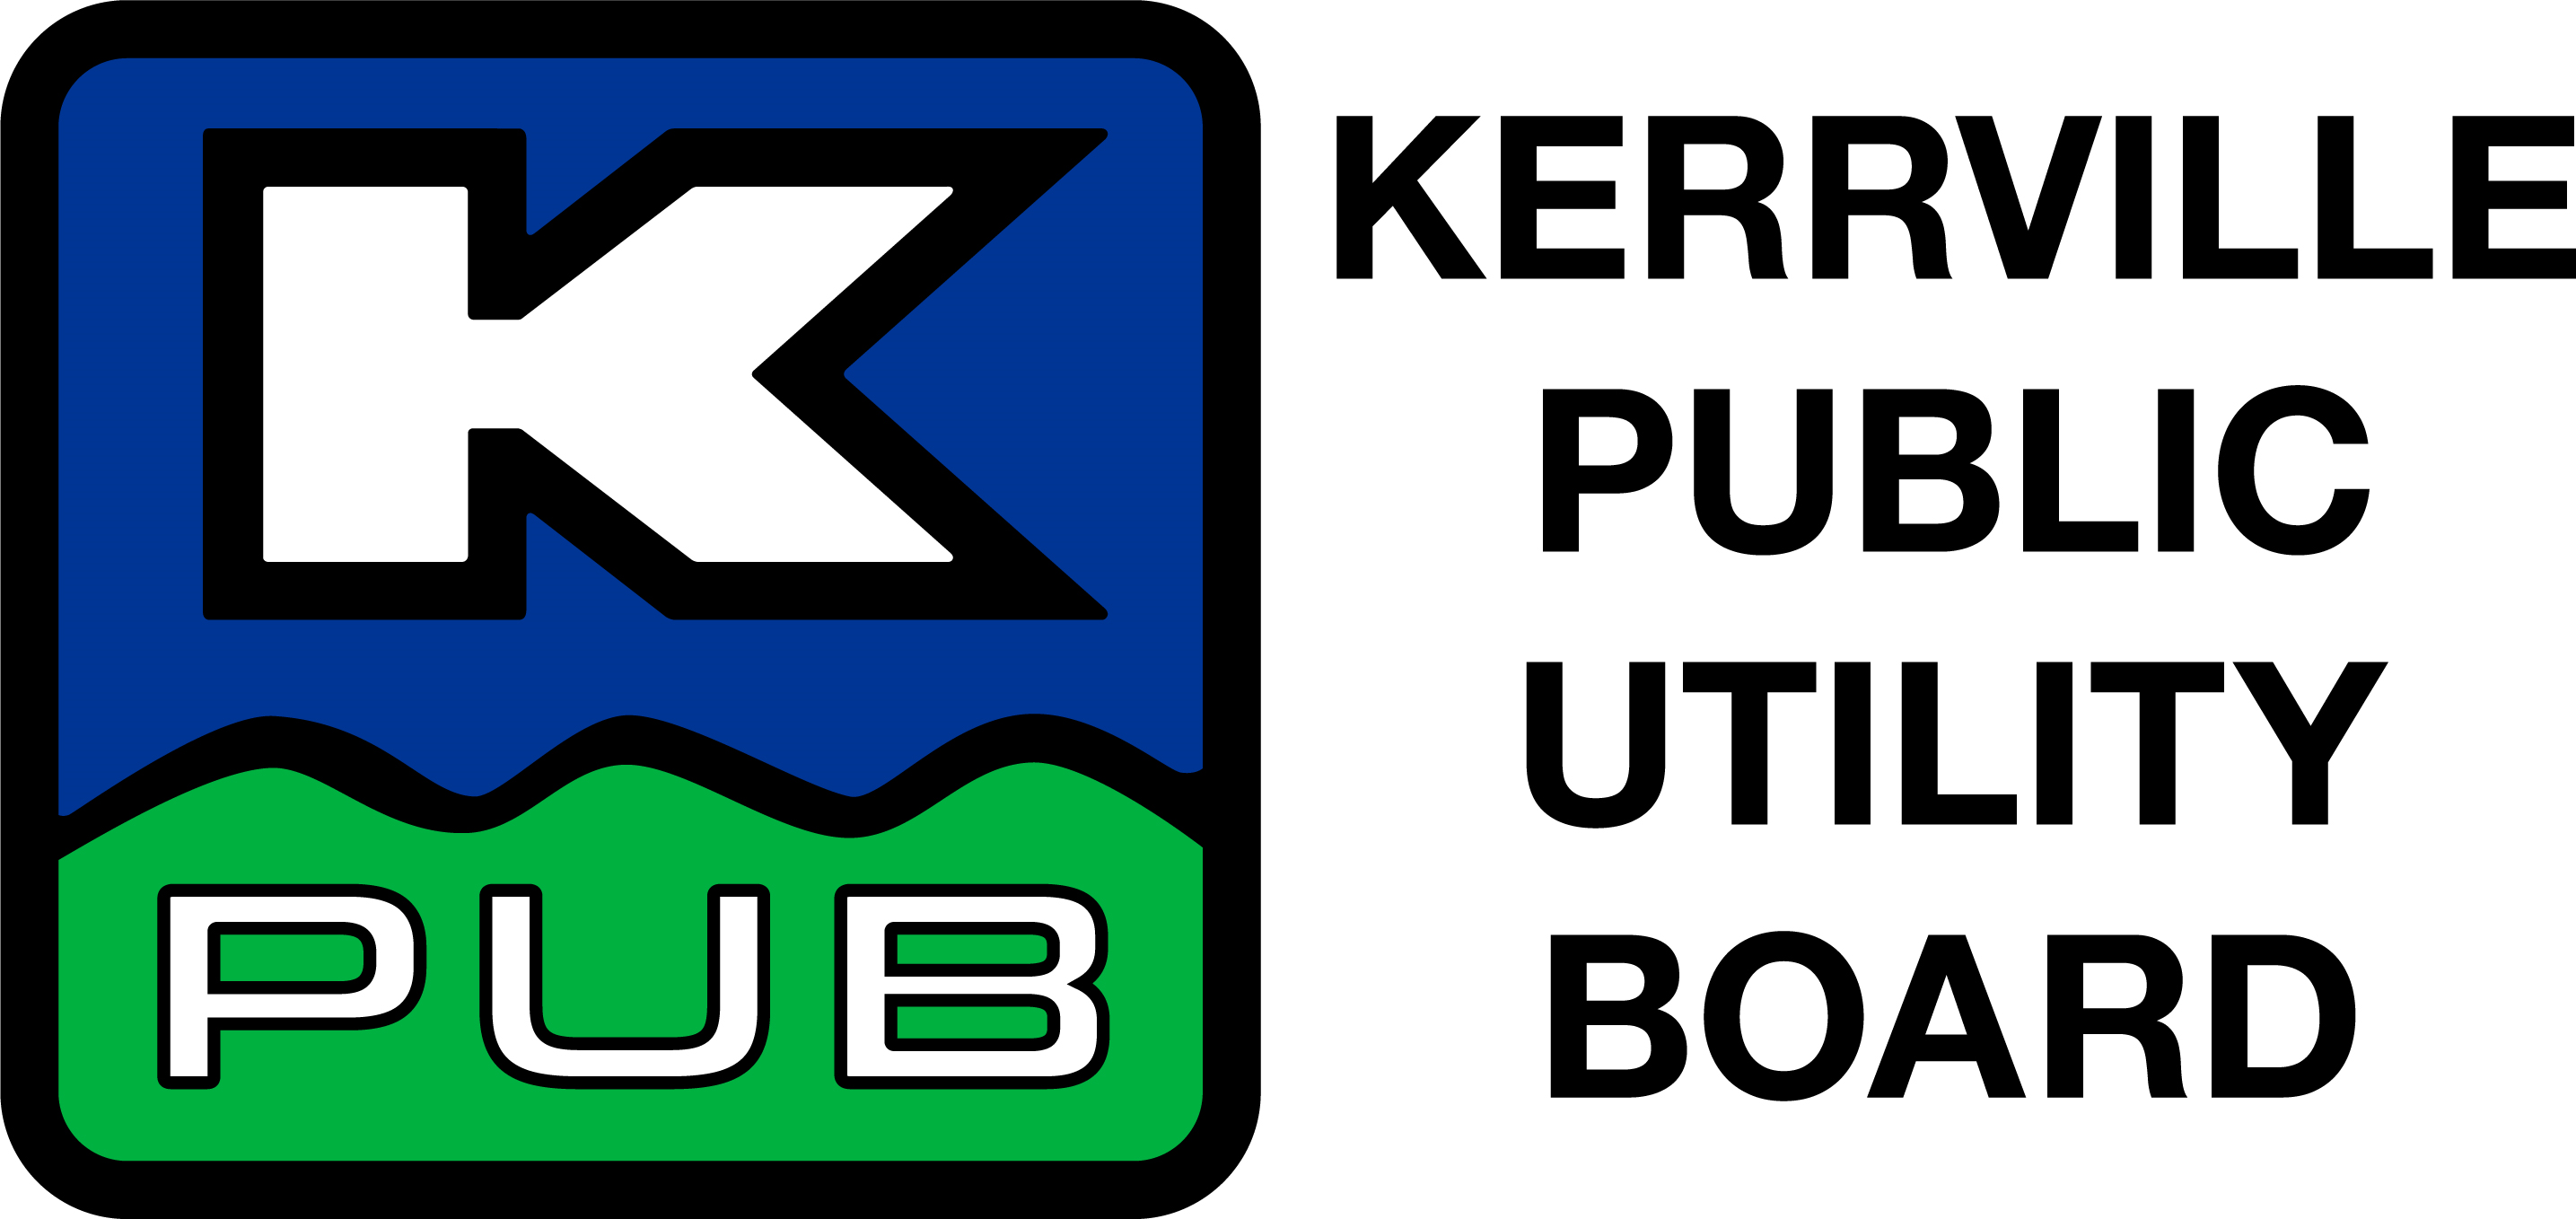 Kerrville Public Utility Board logo